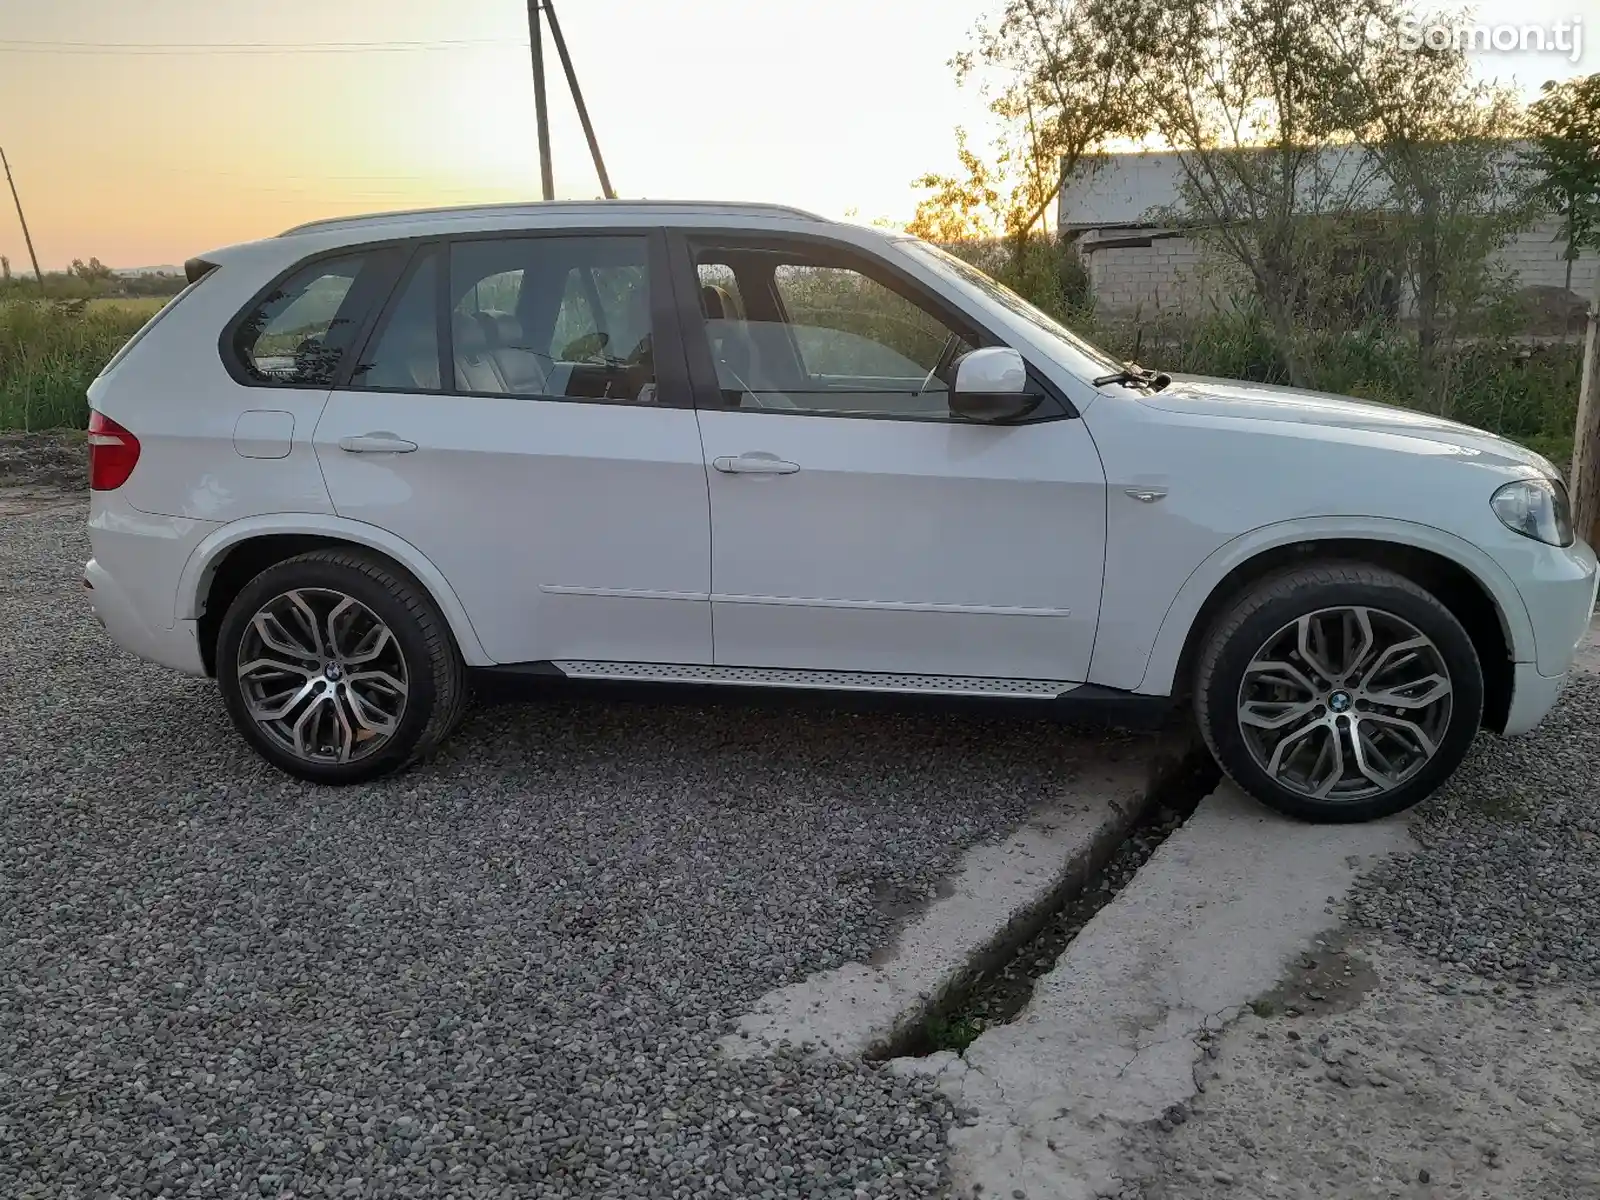 BMW X5, 2009-2